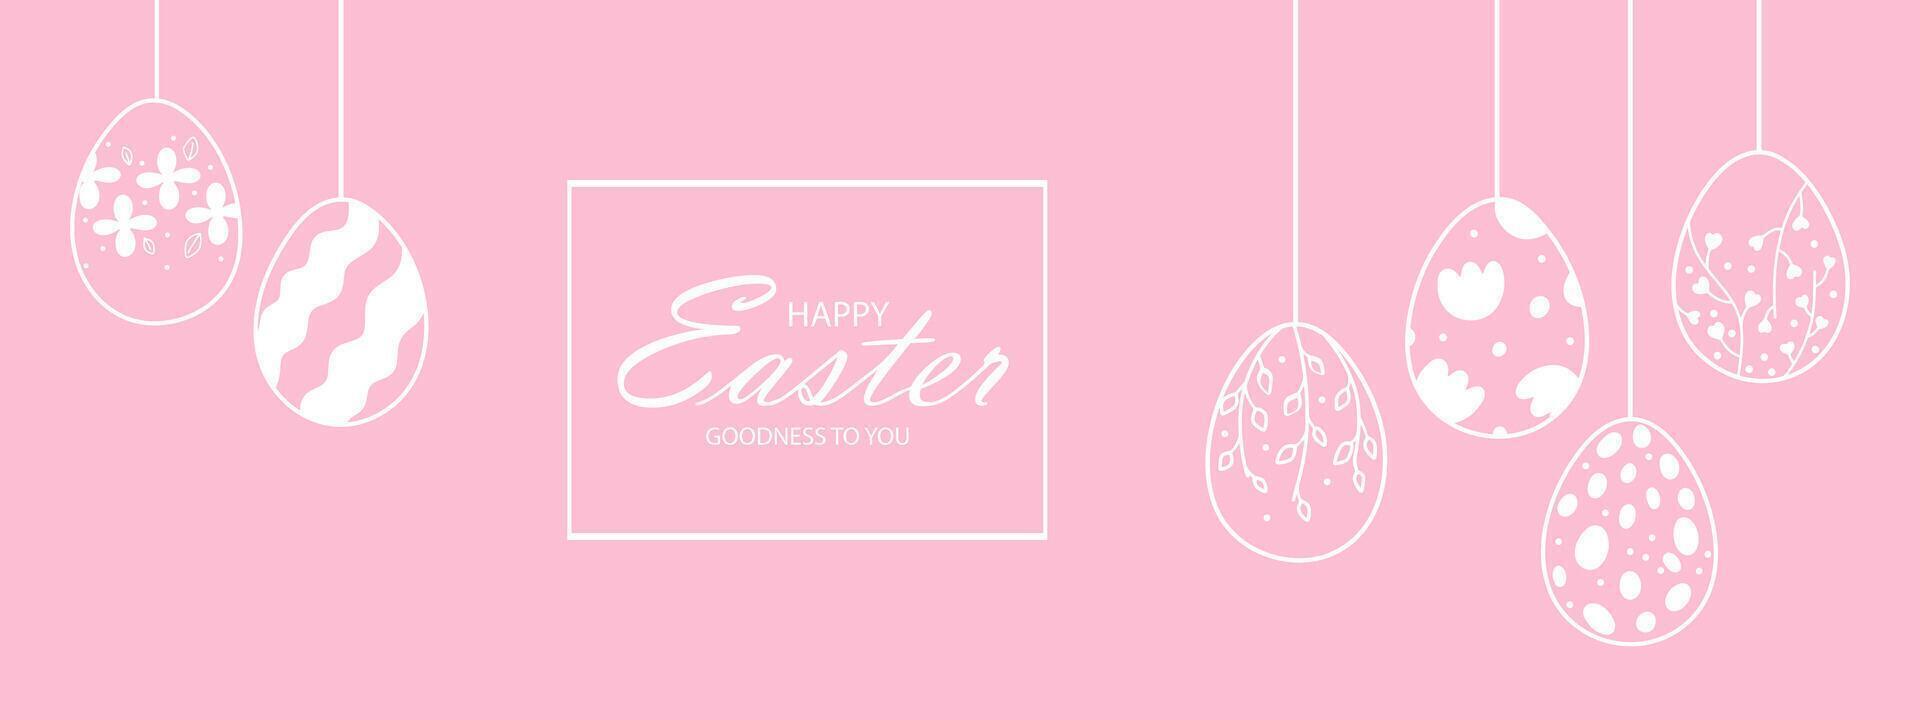 Pasen web banier met slinger van wijnoogst Pasen eieren Aan roze achtergrond met plaats voor tekst. slinger met silhouetten van wijnoogst eieren geschorst Aan snaren. vector